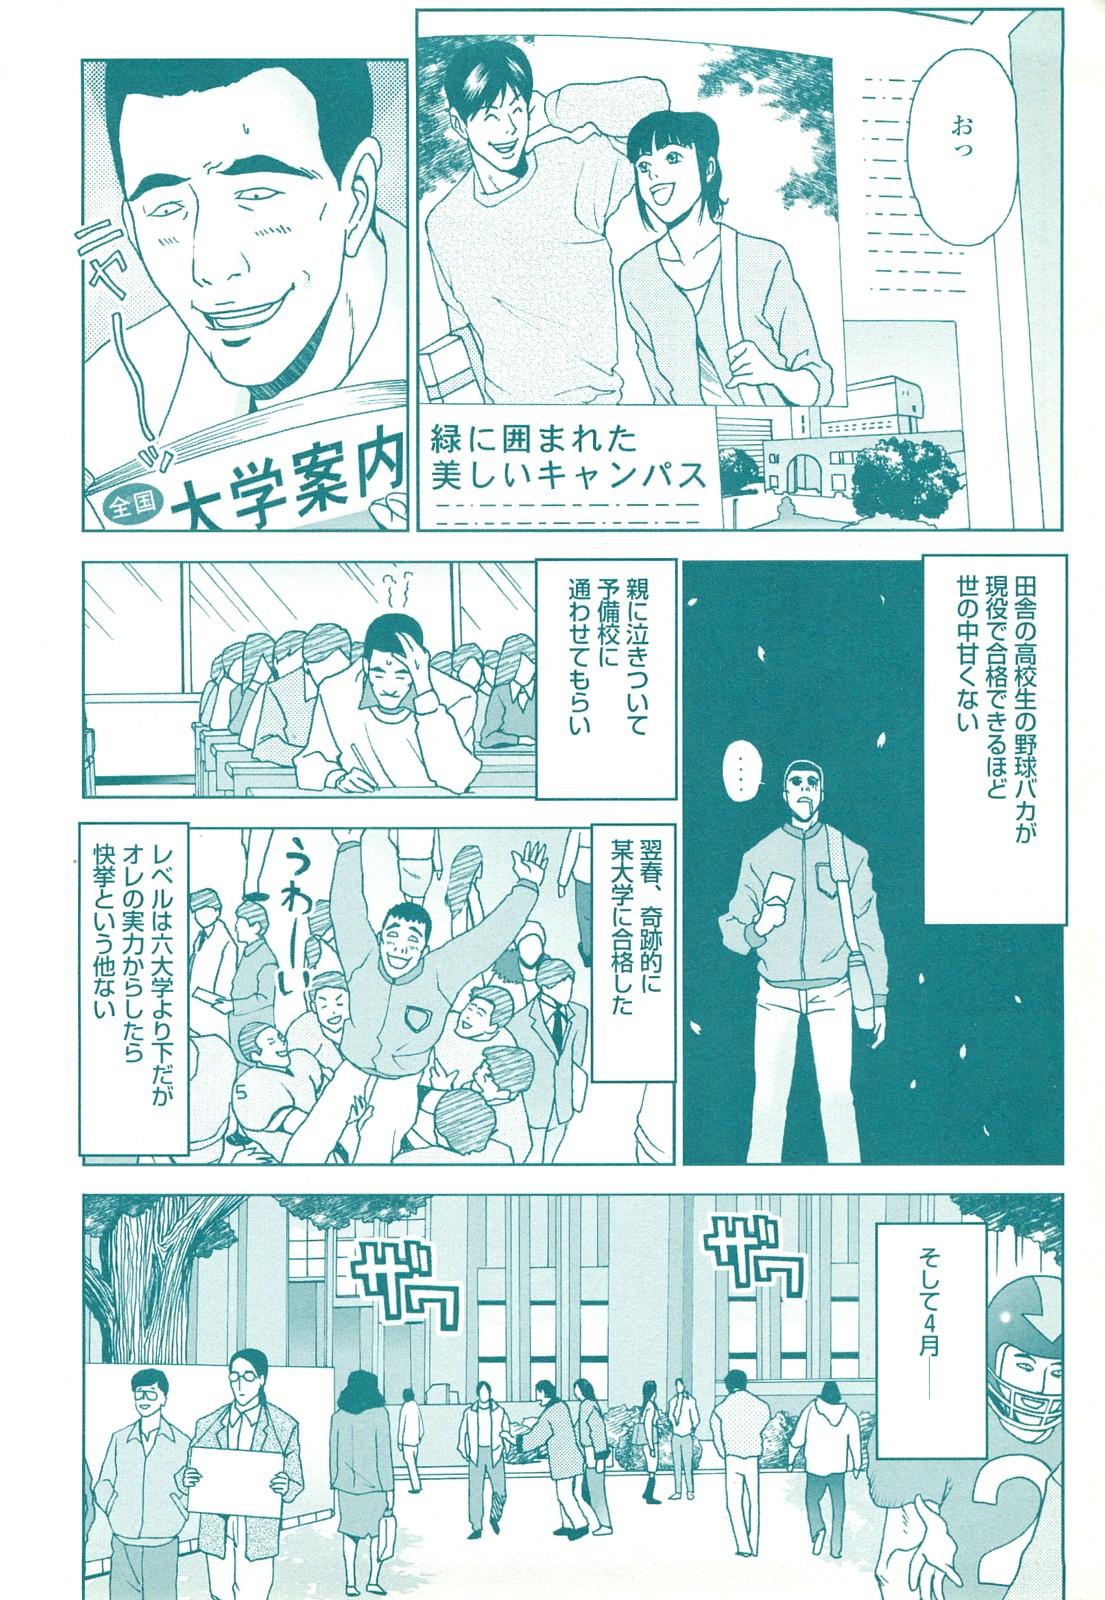 コミック裏モノJAPAN Vol.18 今井のりたつスペシャル号 143